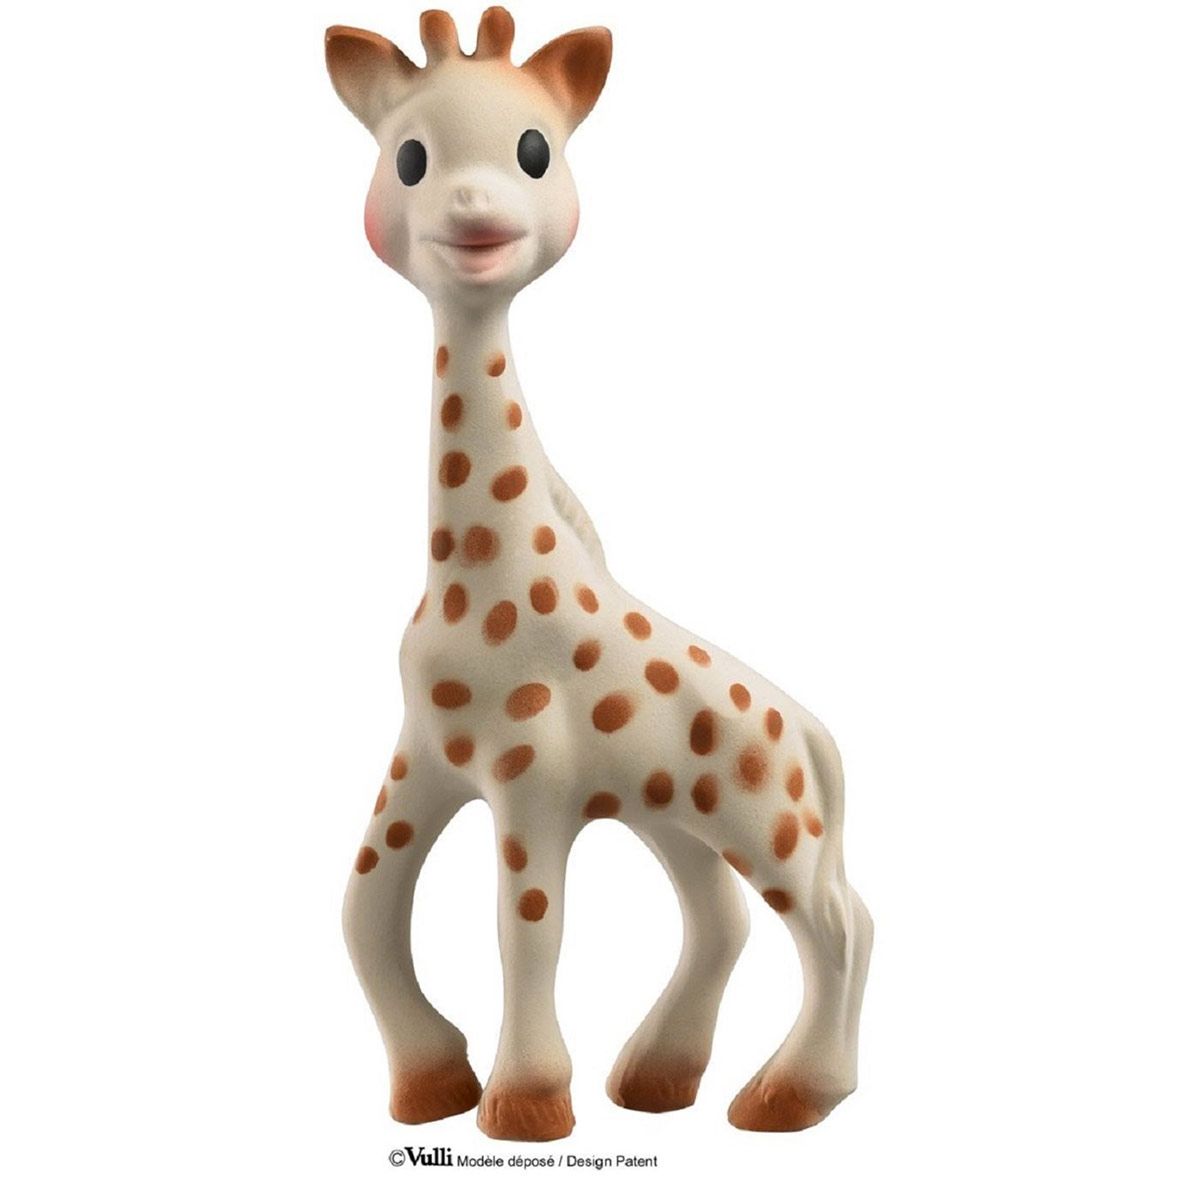 Balle le monde des surprises Sophie la girafe - La Grande Récré